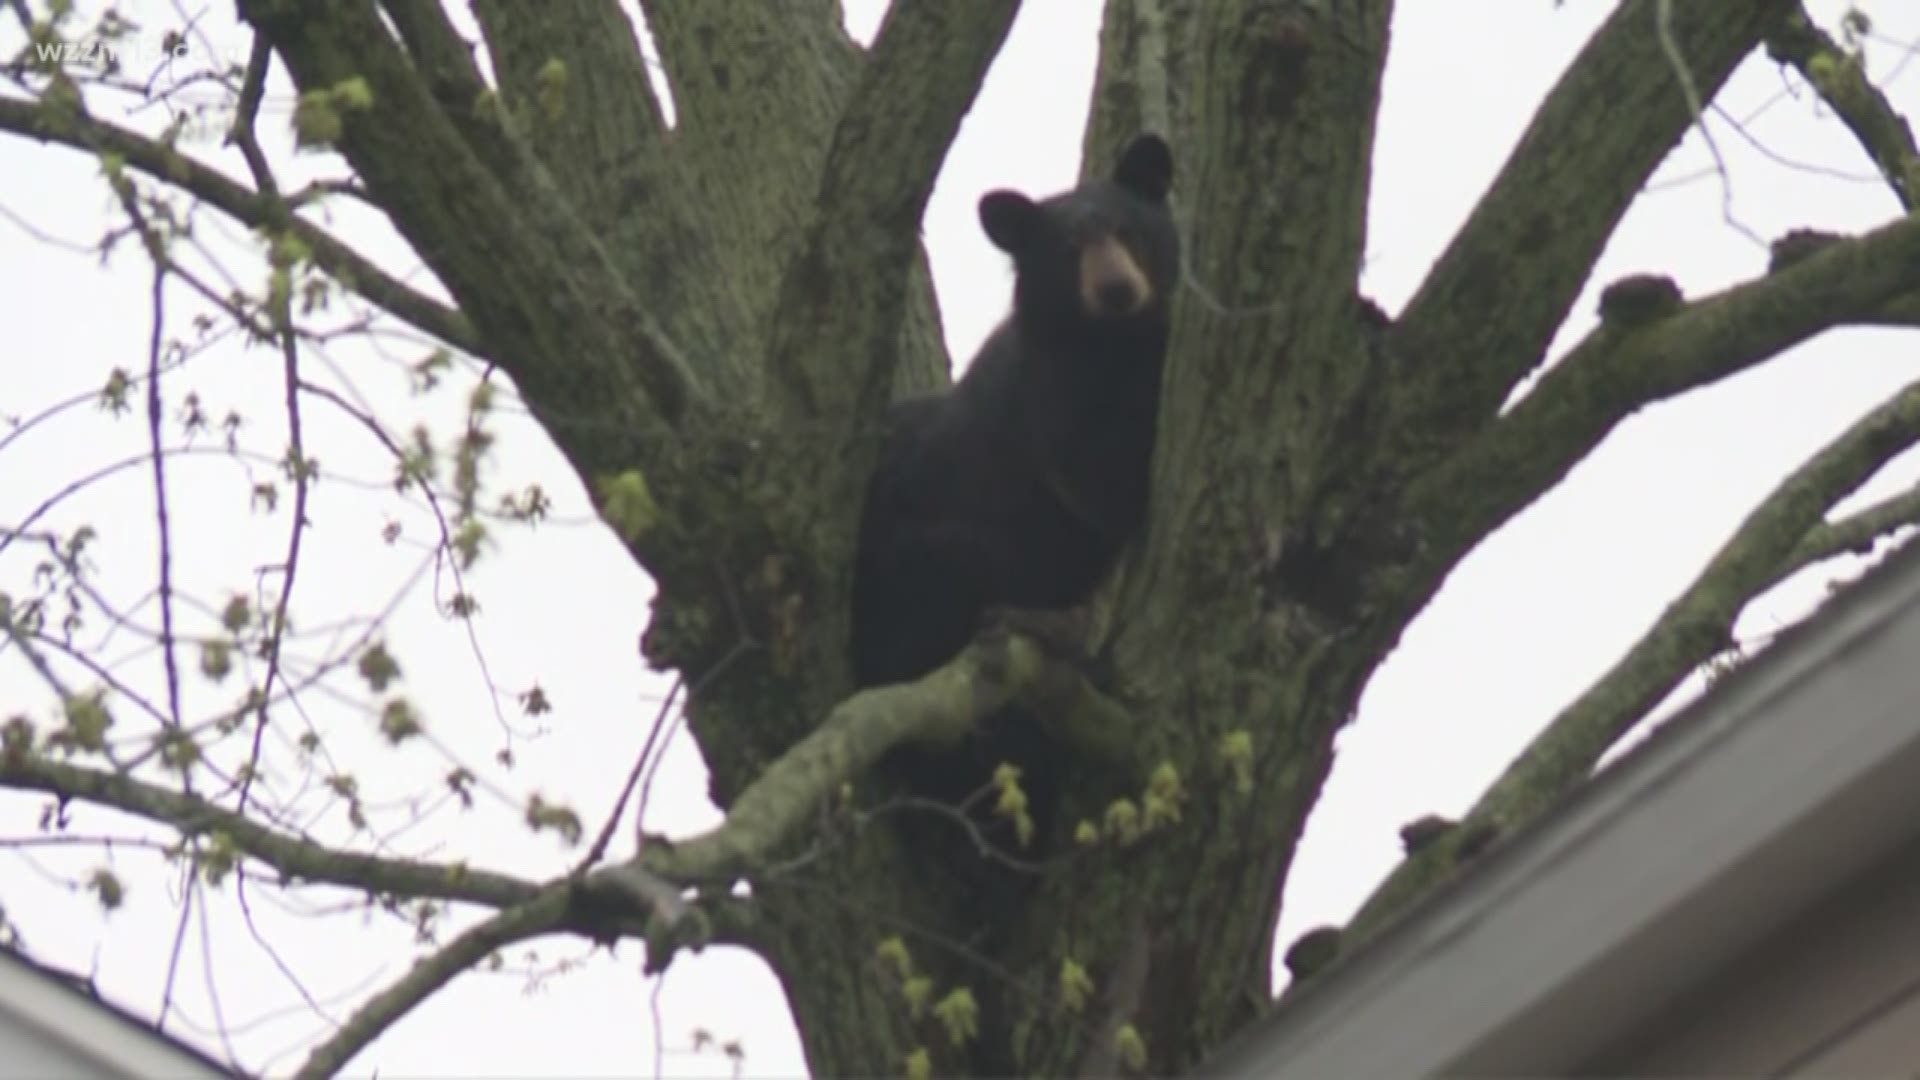 Bear hunting season opens in Michigan